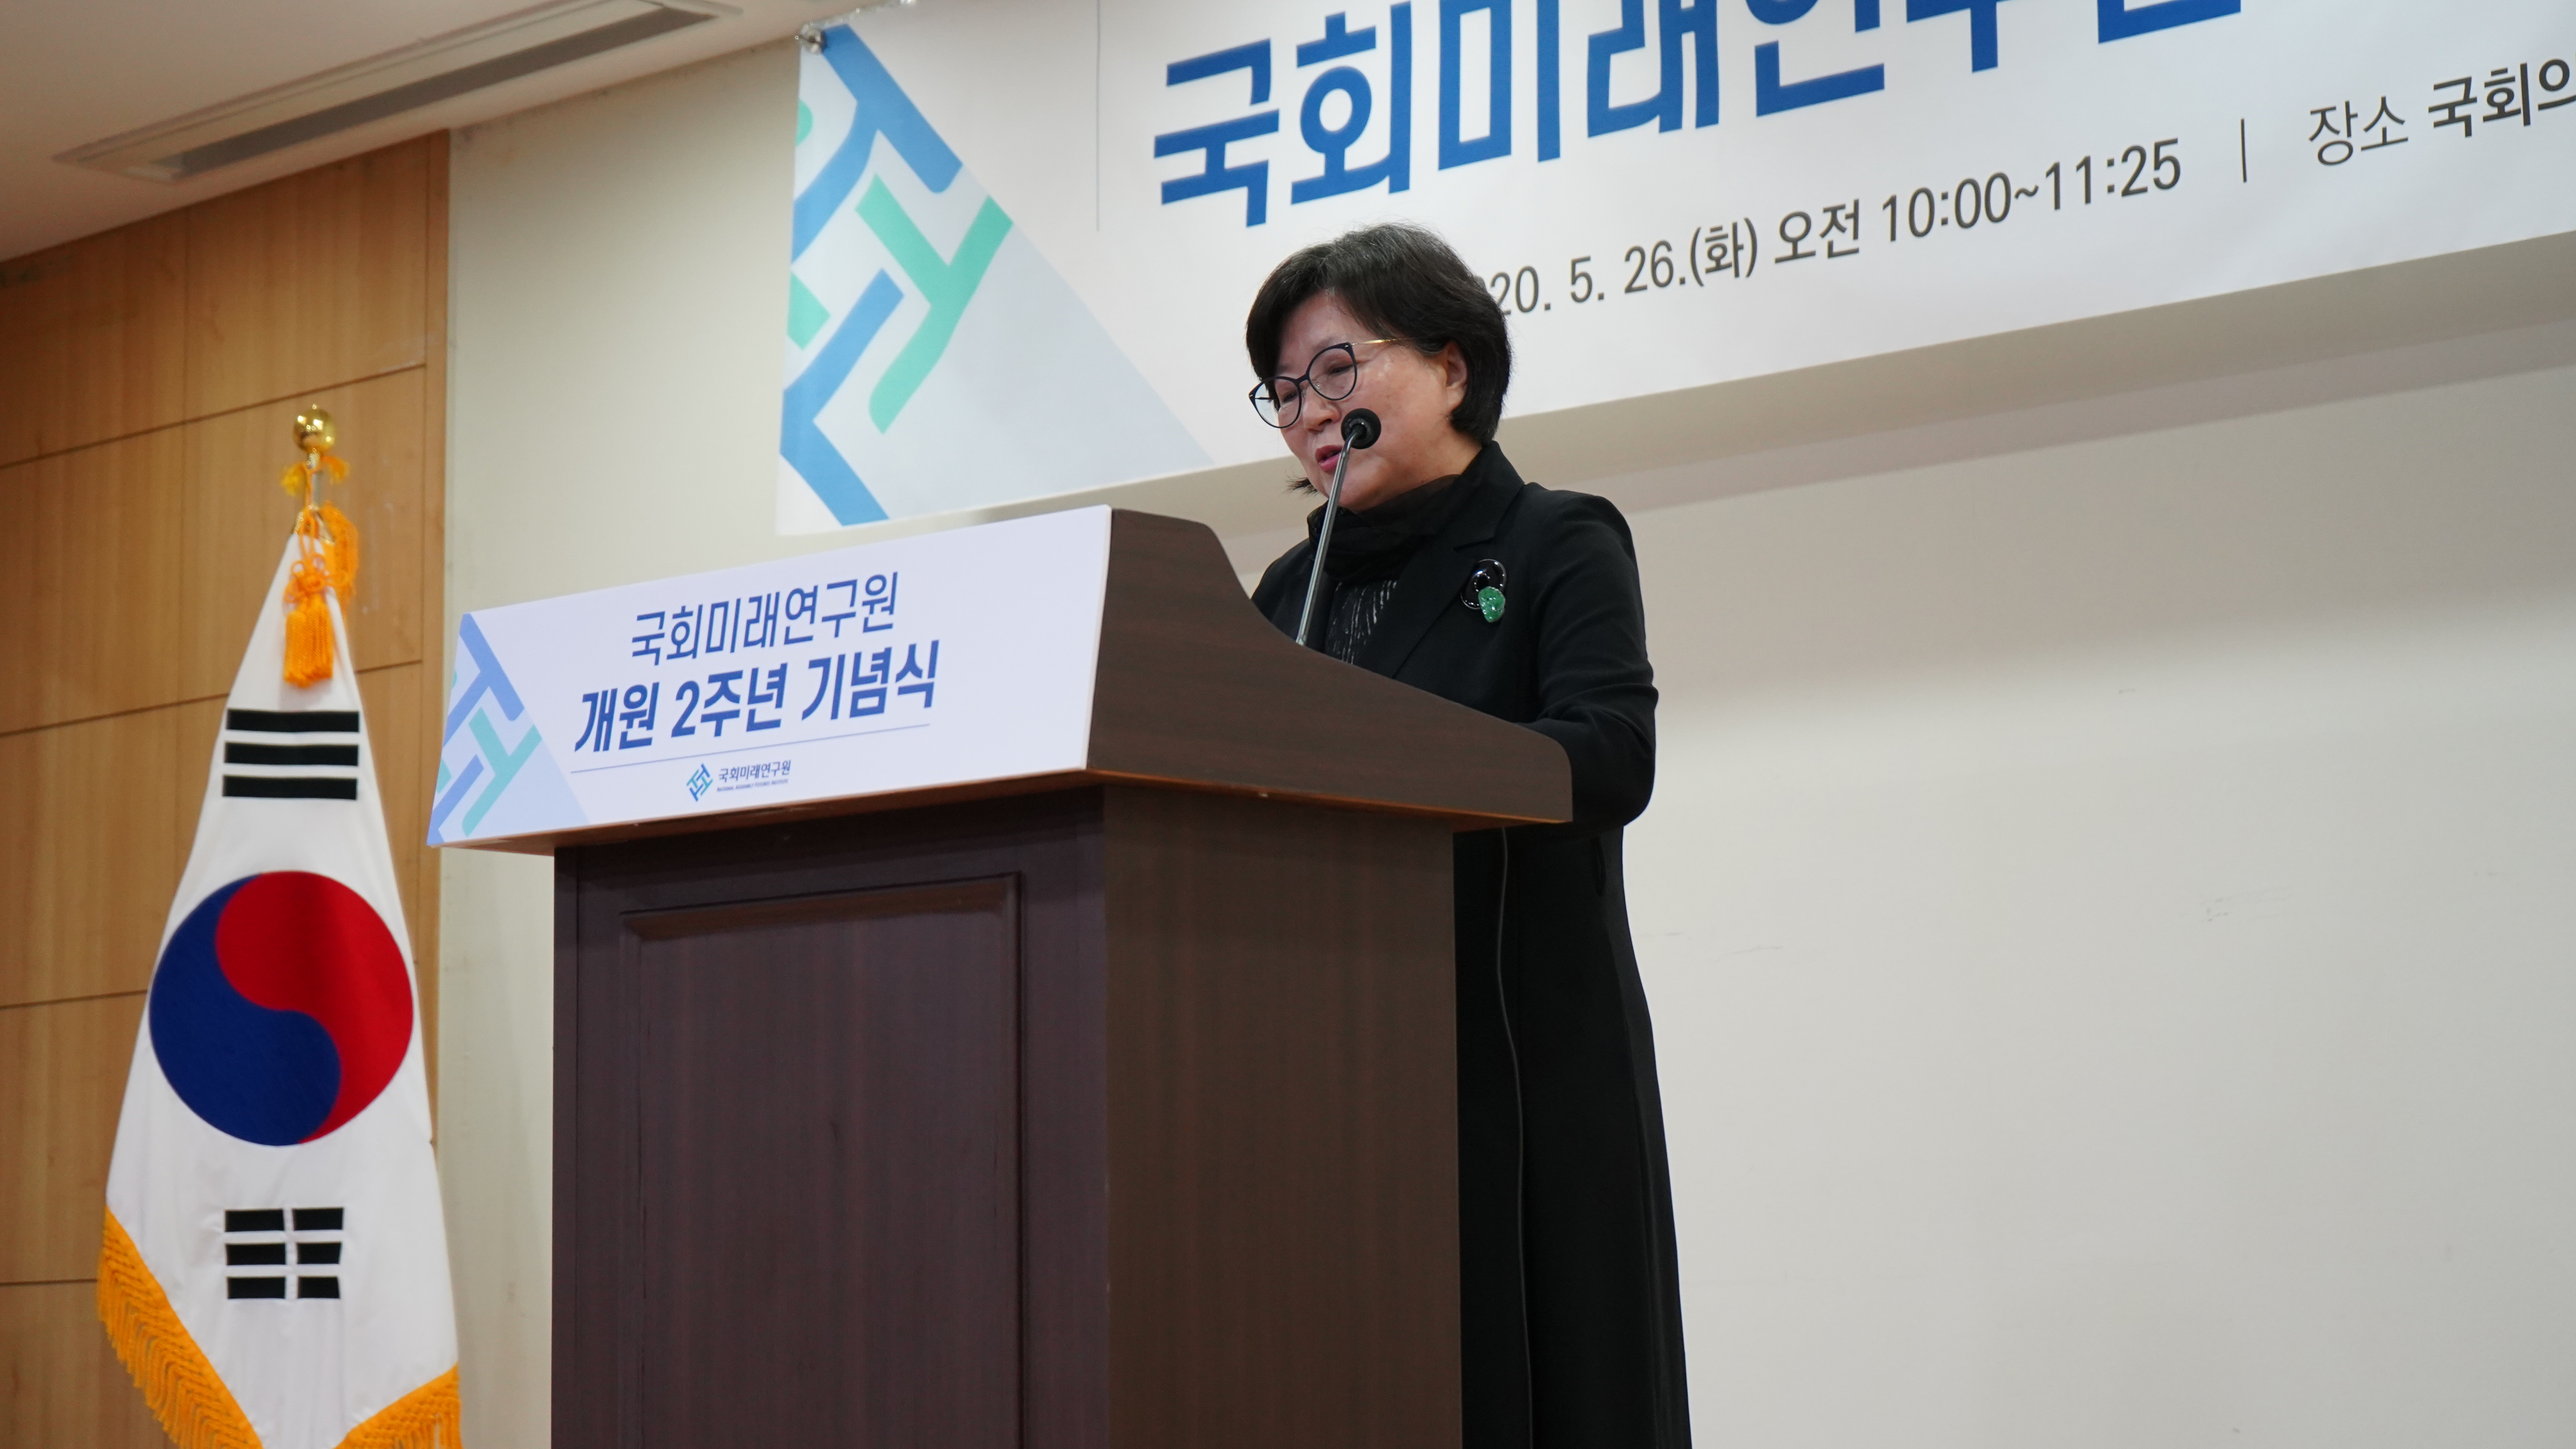 [05.26] 국회미래연구원 개원 2주년 기념식 개최3